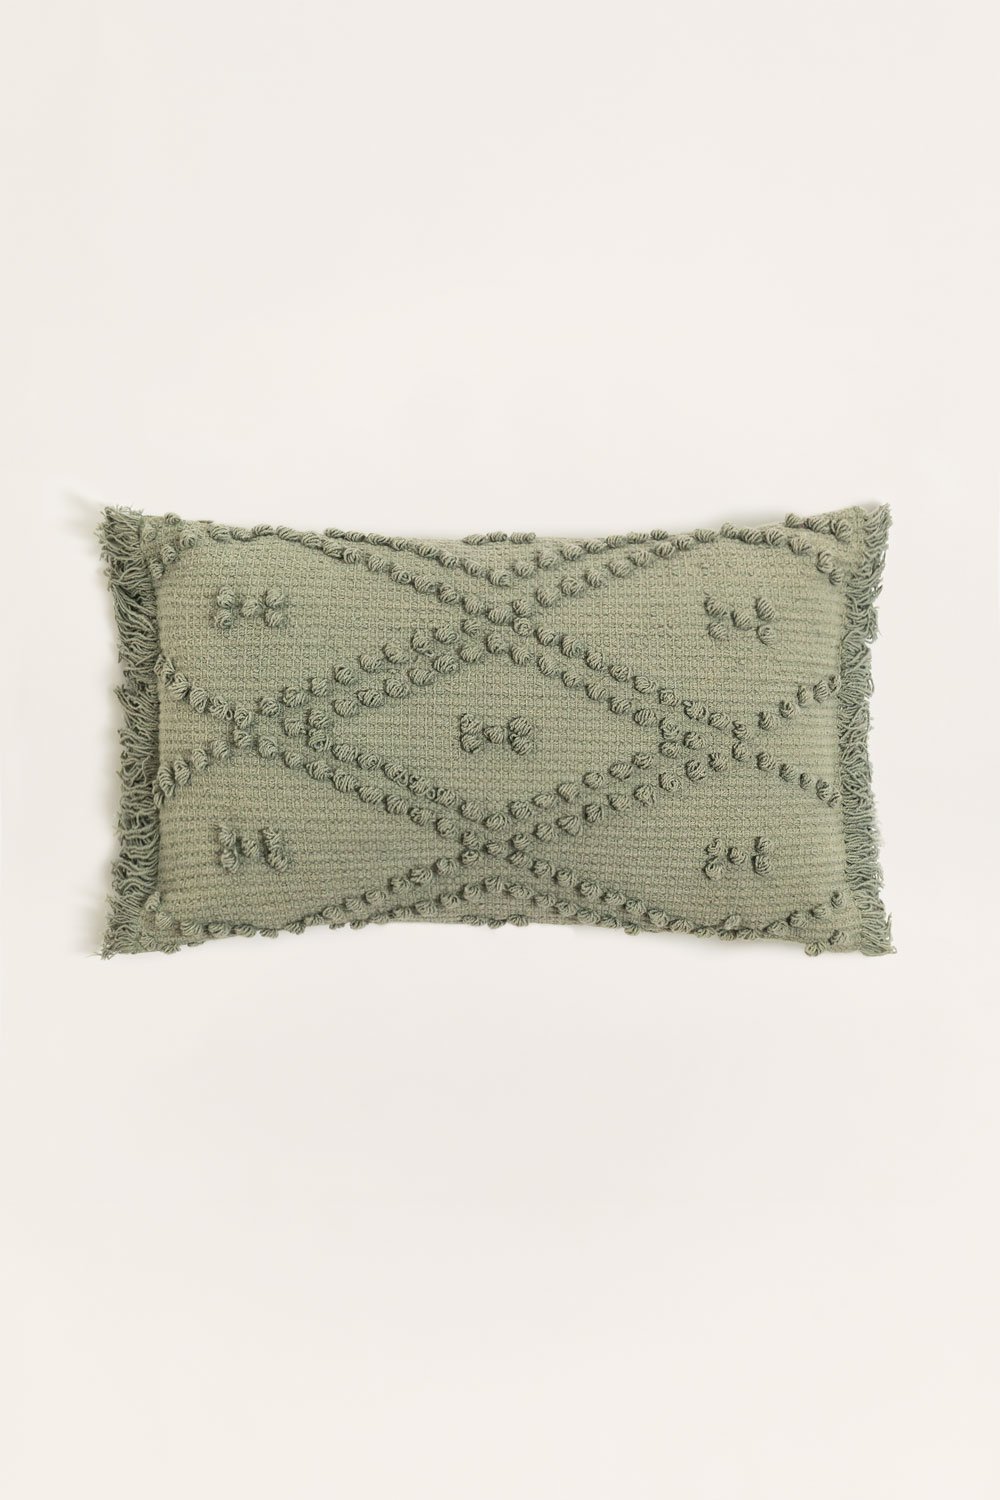 Cuscino in cotone (32x52 cm) Susu, immagine della galleria 1